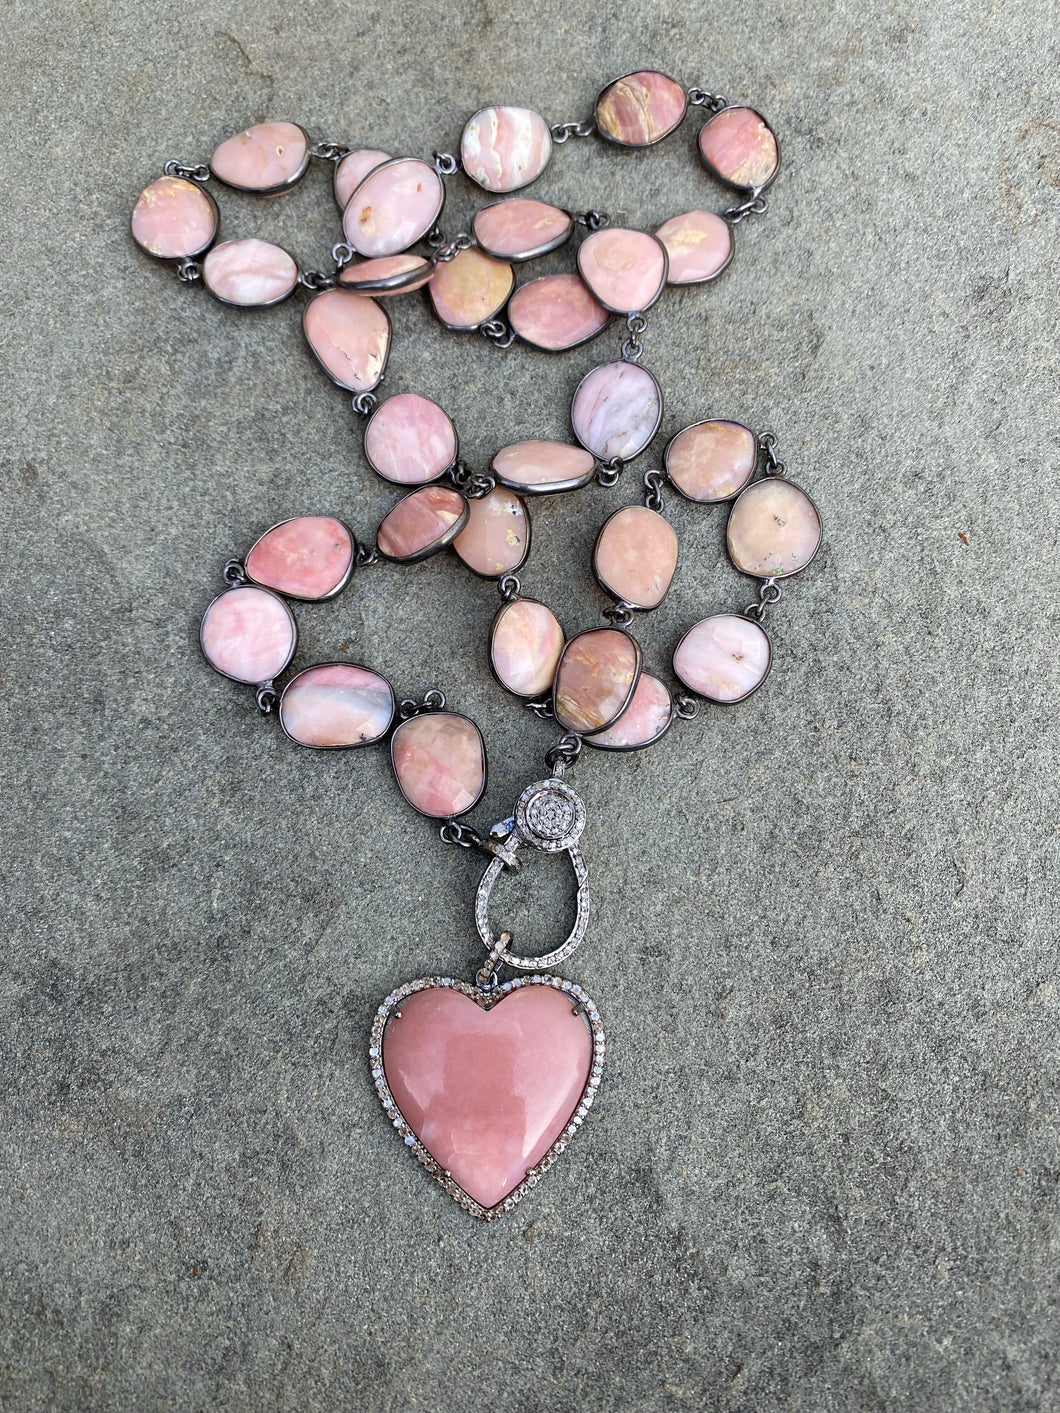 Pink Opal Bezel Necklace with Pave Diamond Clasp. Pink Opal and Pave Diamond Heart Pendant